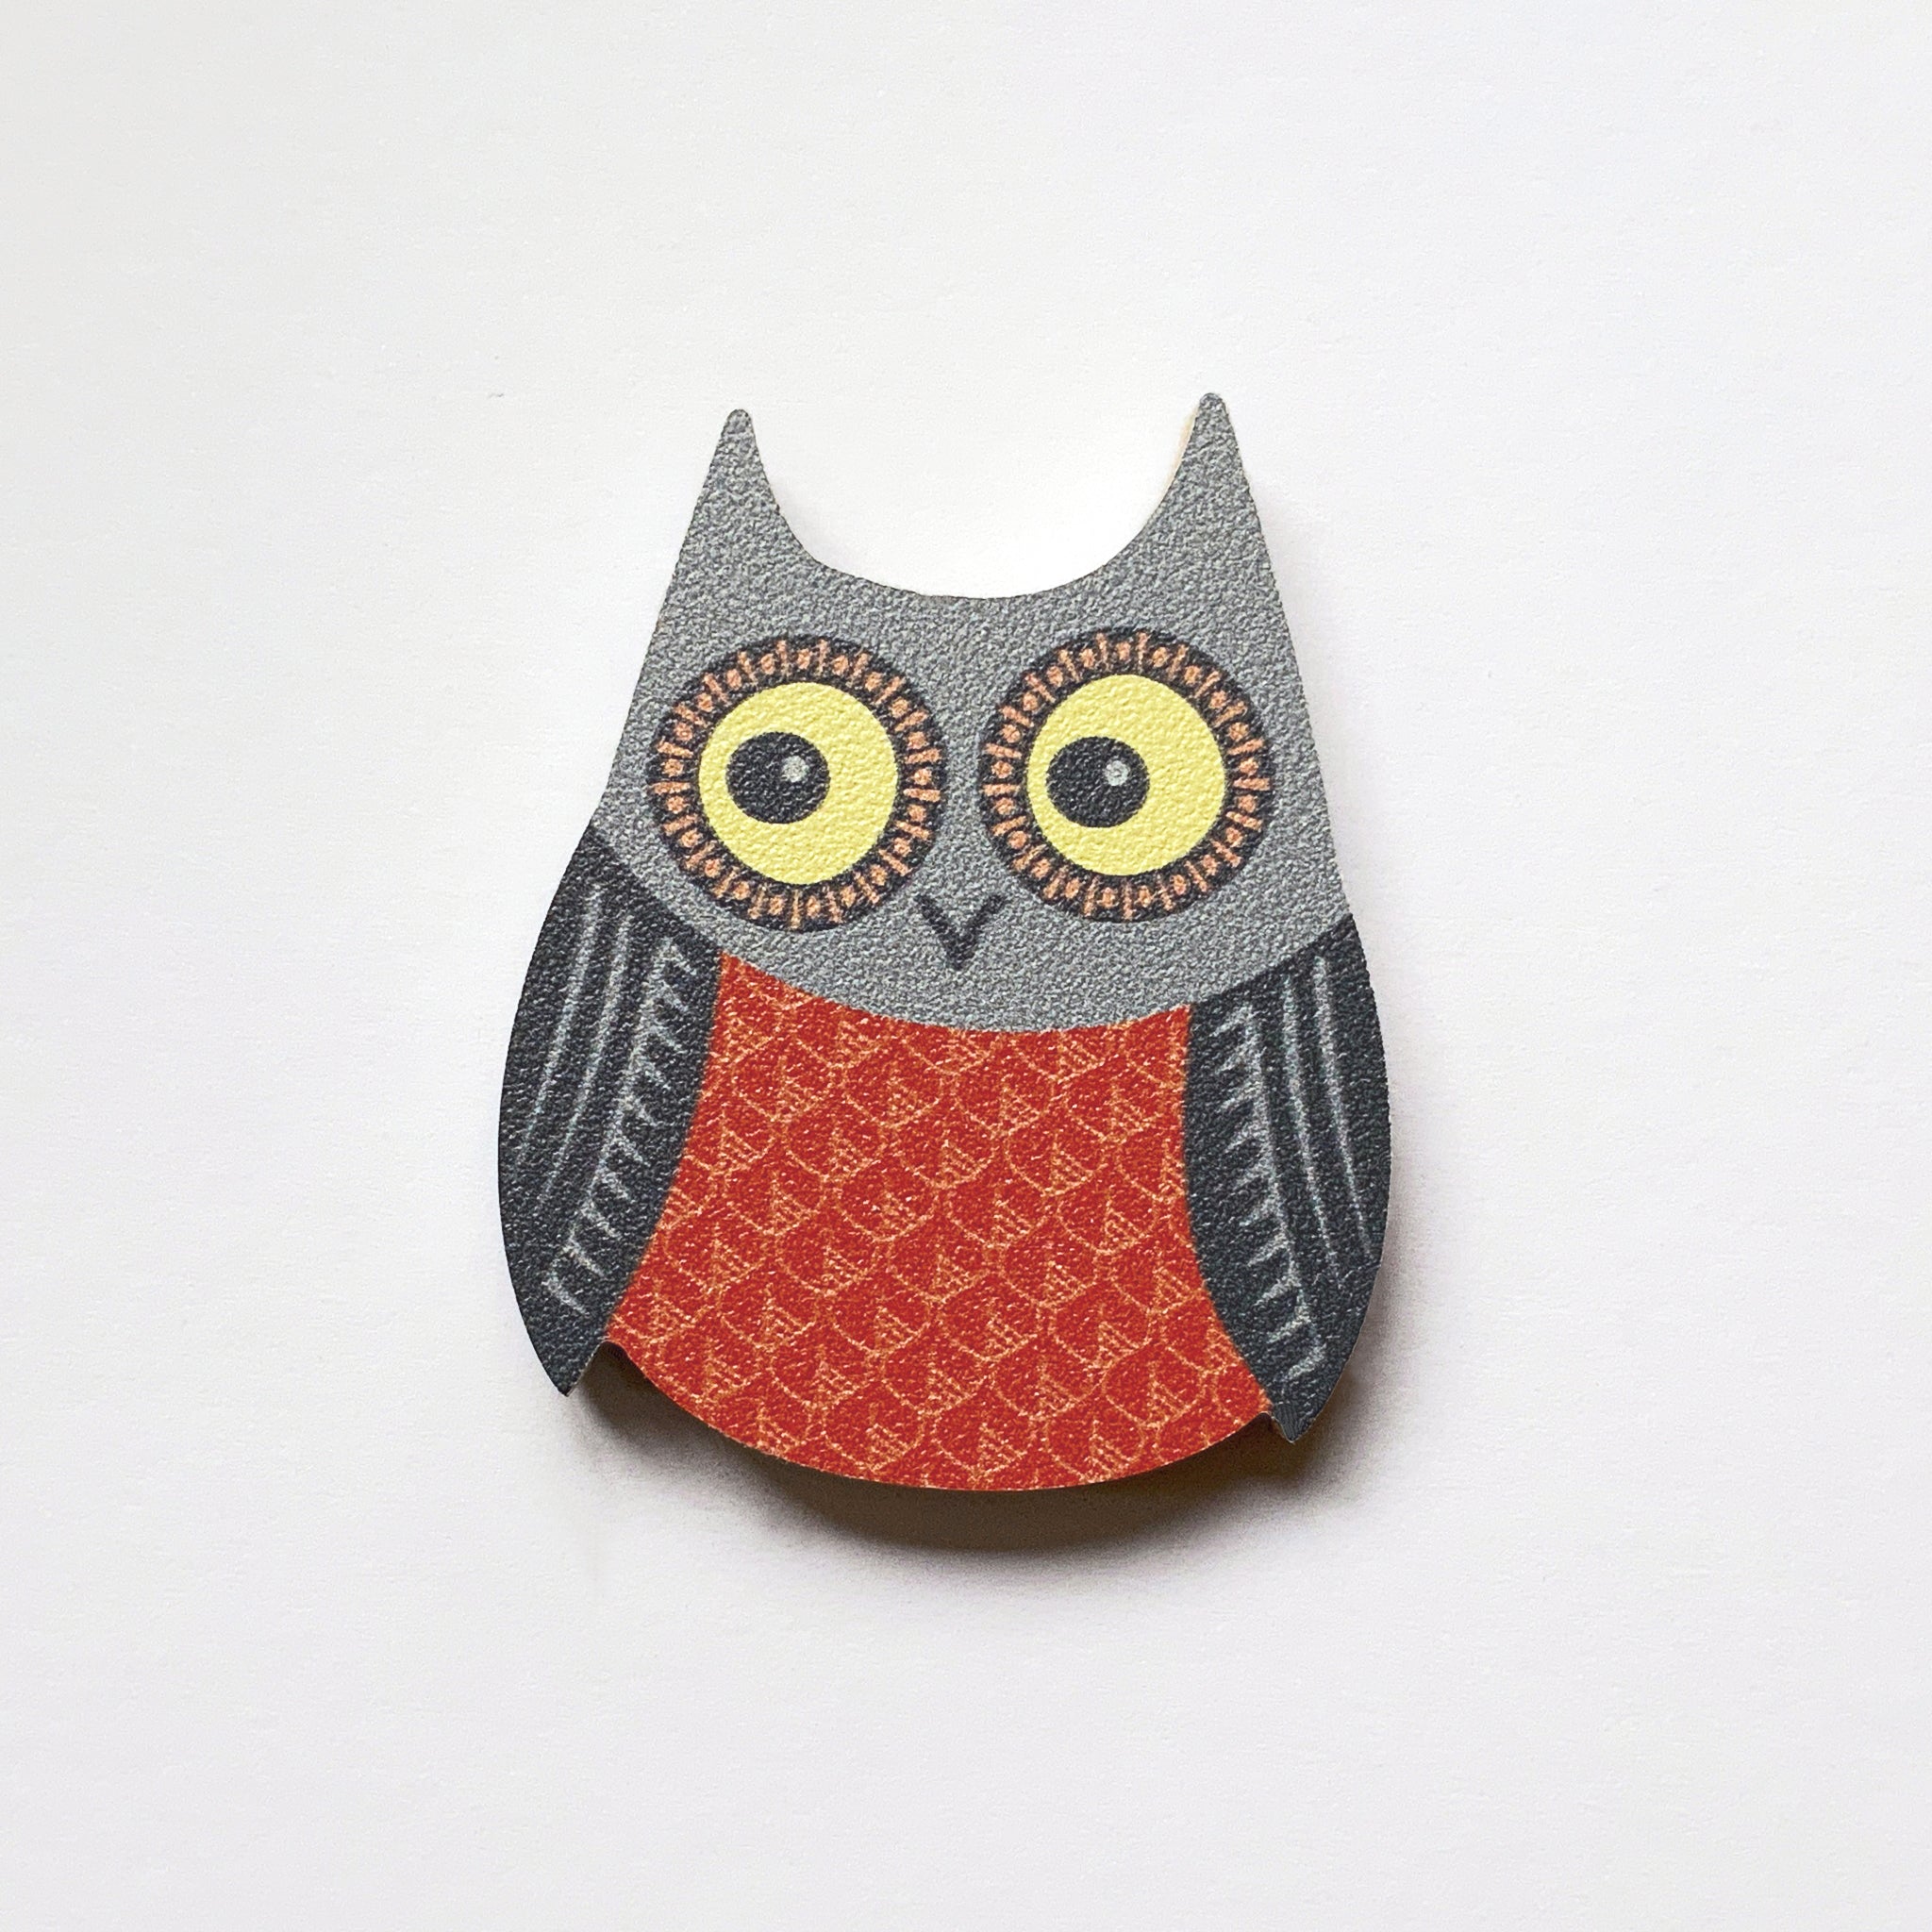 An owl design plywood fridge magnet by Beyond the Fridge